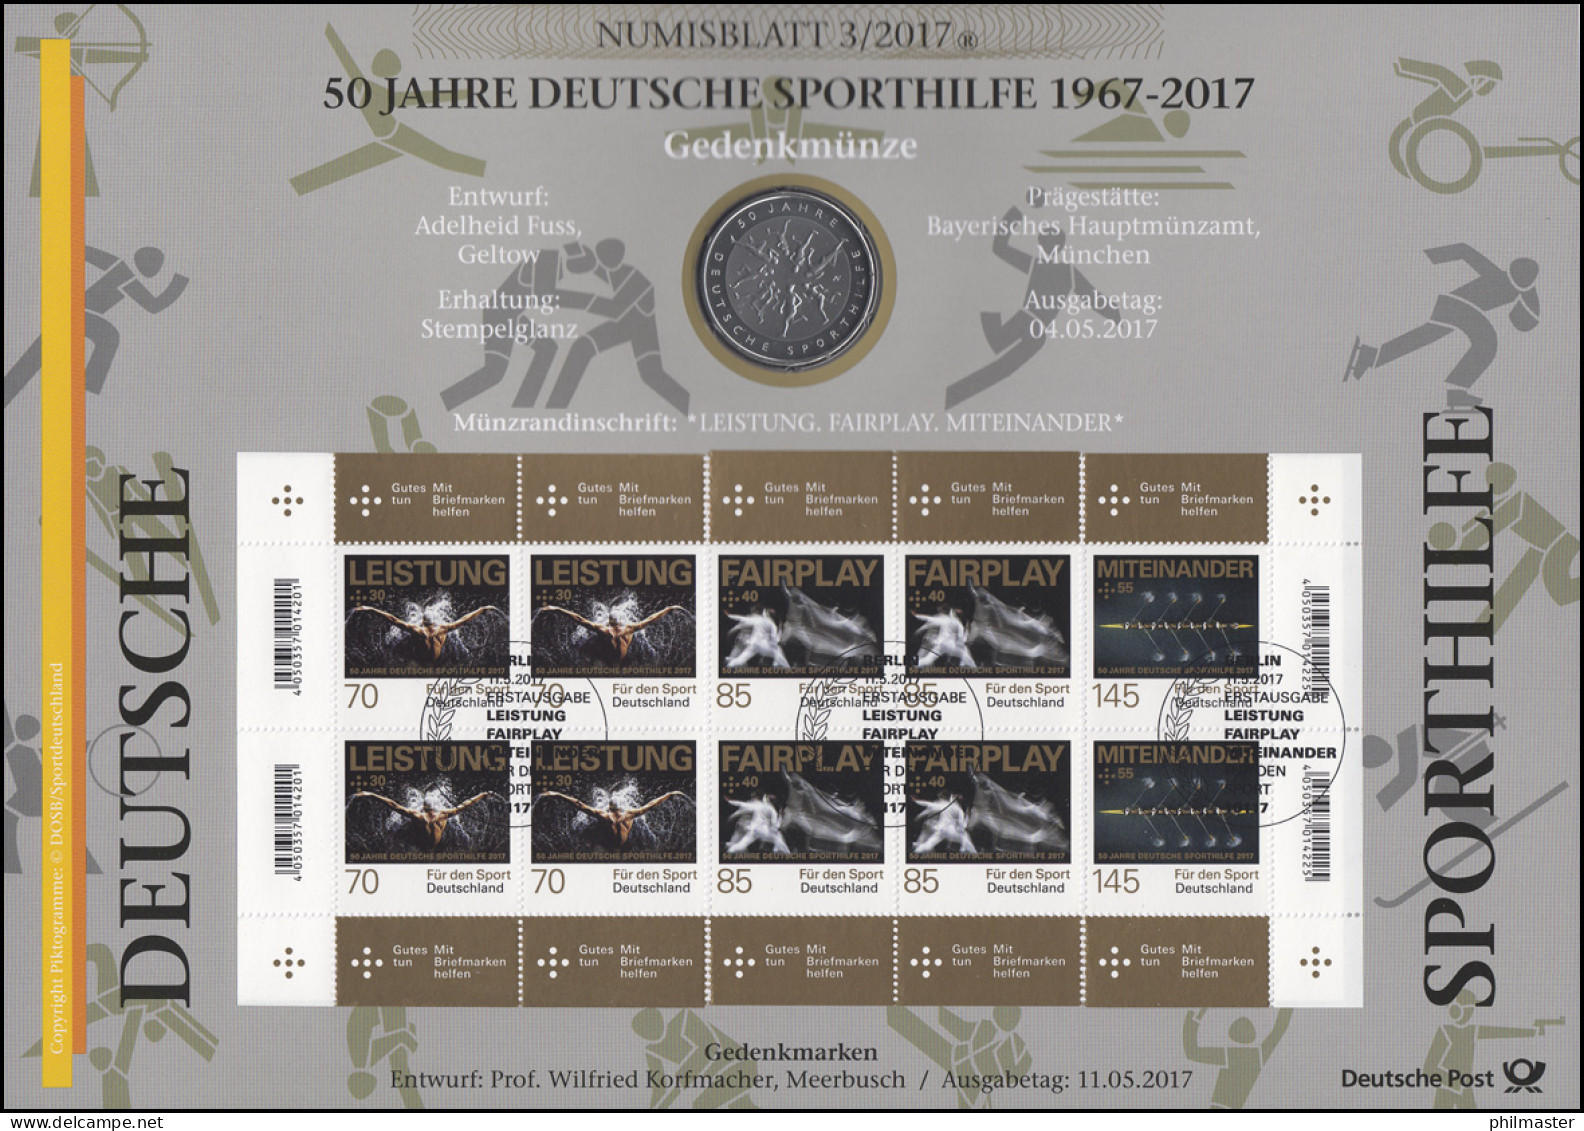 3307-3309 50 Jahre Deutsche Sporthilfe - Numisblatt 3/2017 - Numisbriefe